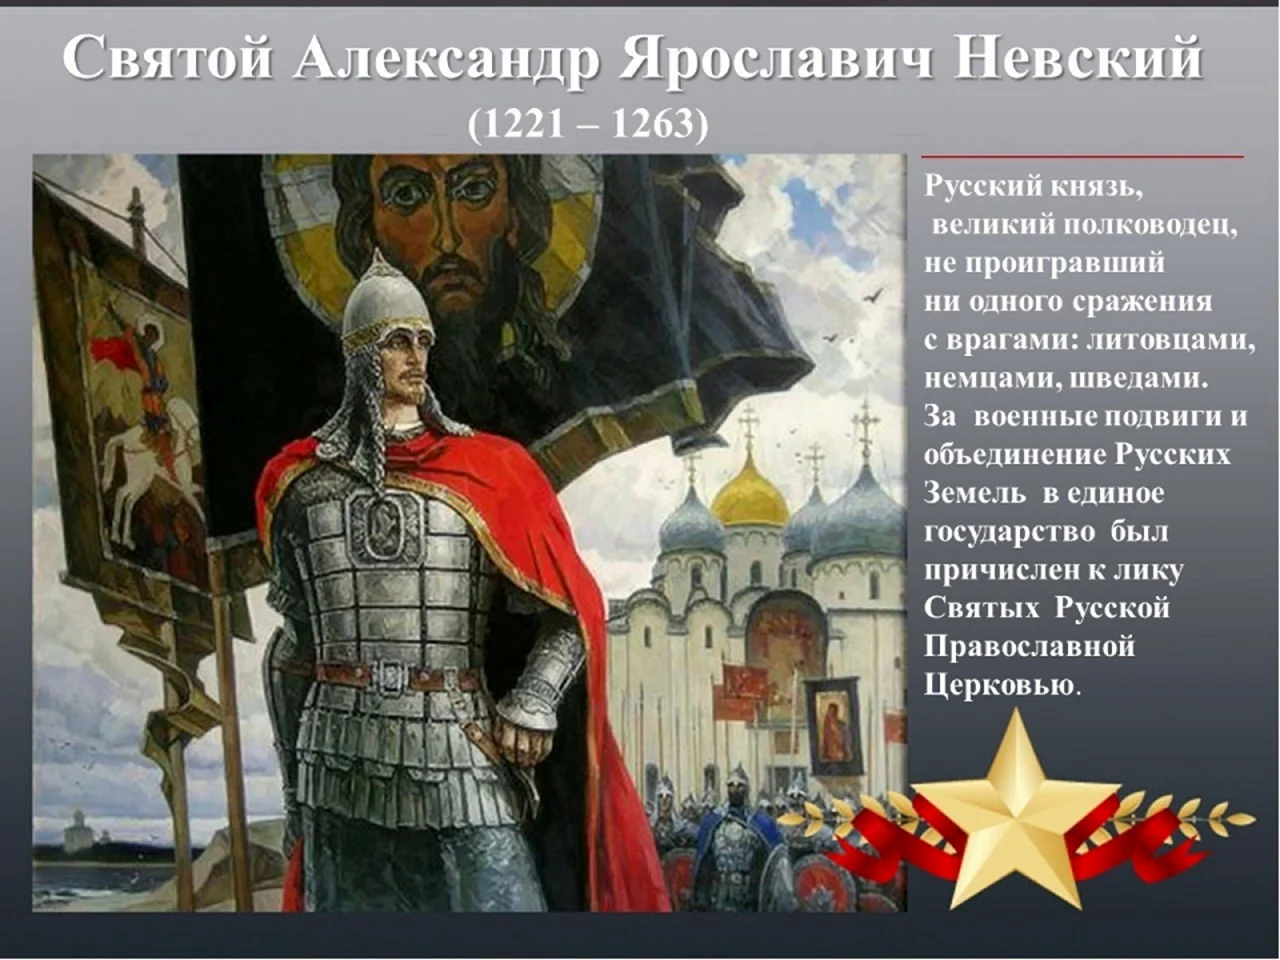 Святой защитник земли русской князь Александр Невский